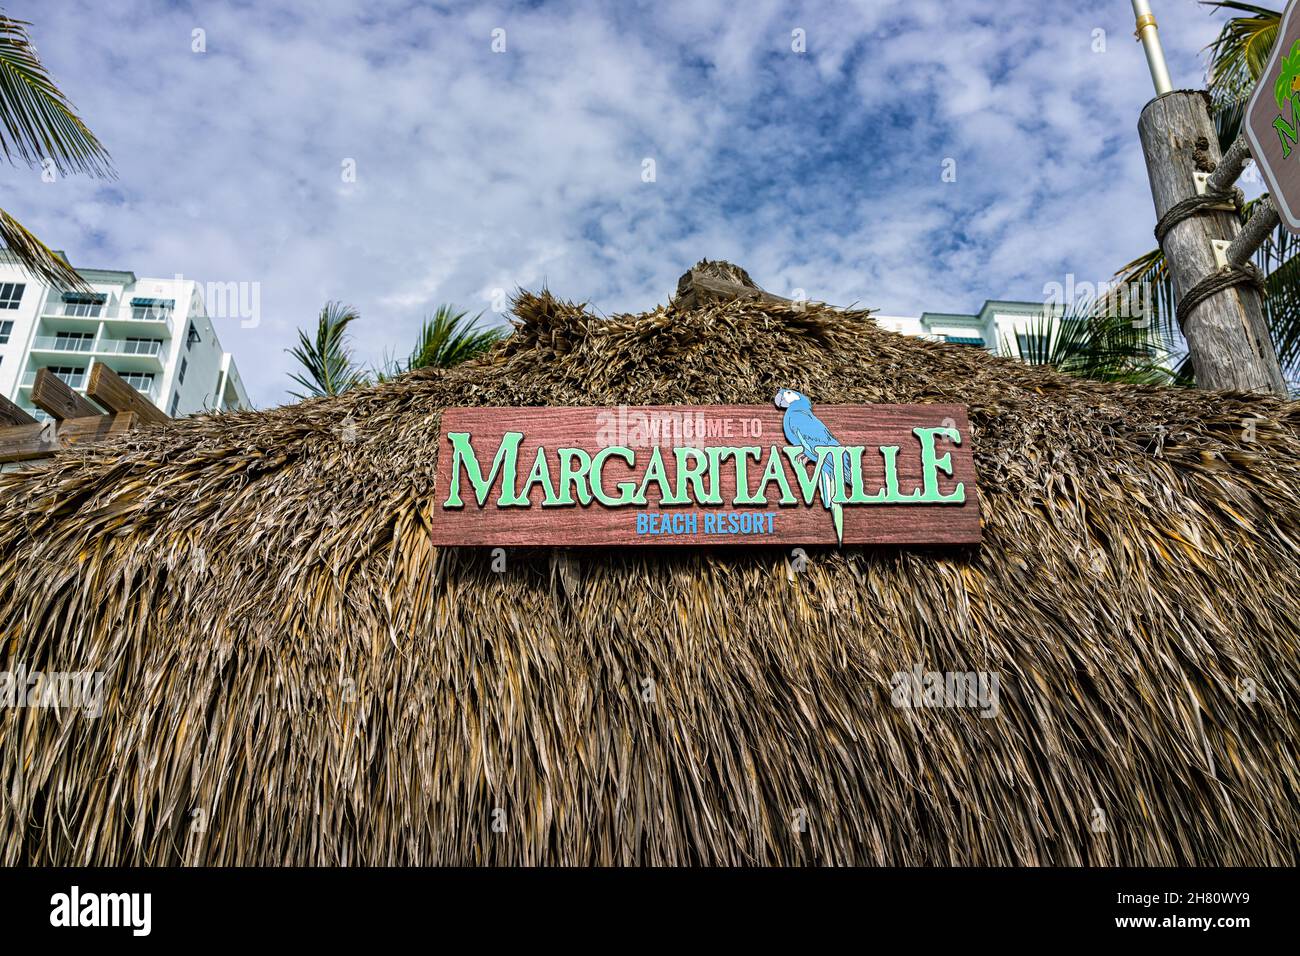 Hollywood, USA - 4 agosto 2021: A nord di Miami Beach, passerella Hollywood broadwalk in Florida con cartello sull'ingresso della baita Tiki a Margaritaville resta Foto Stock